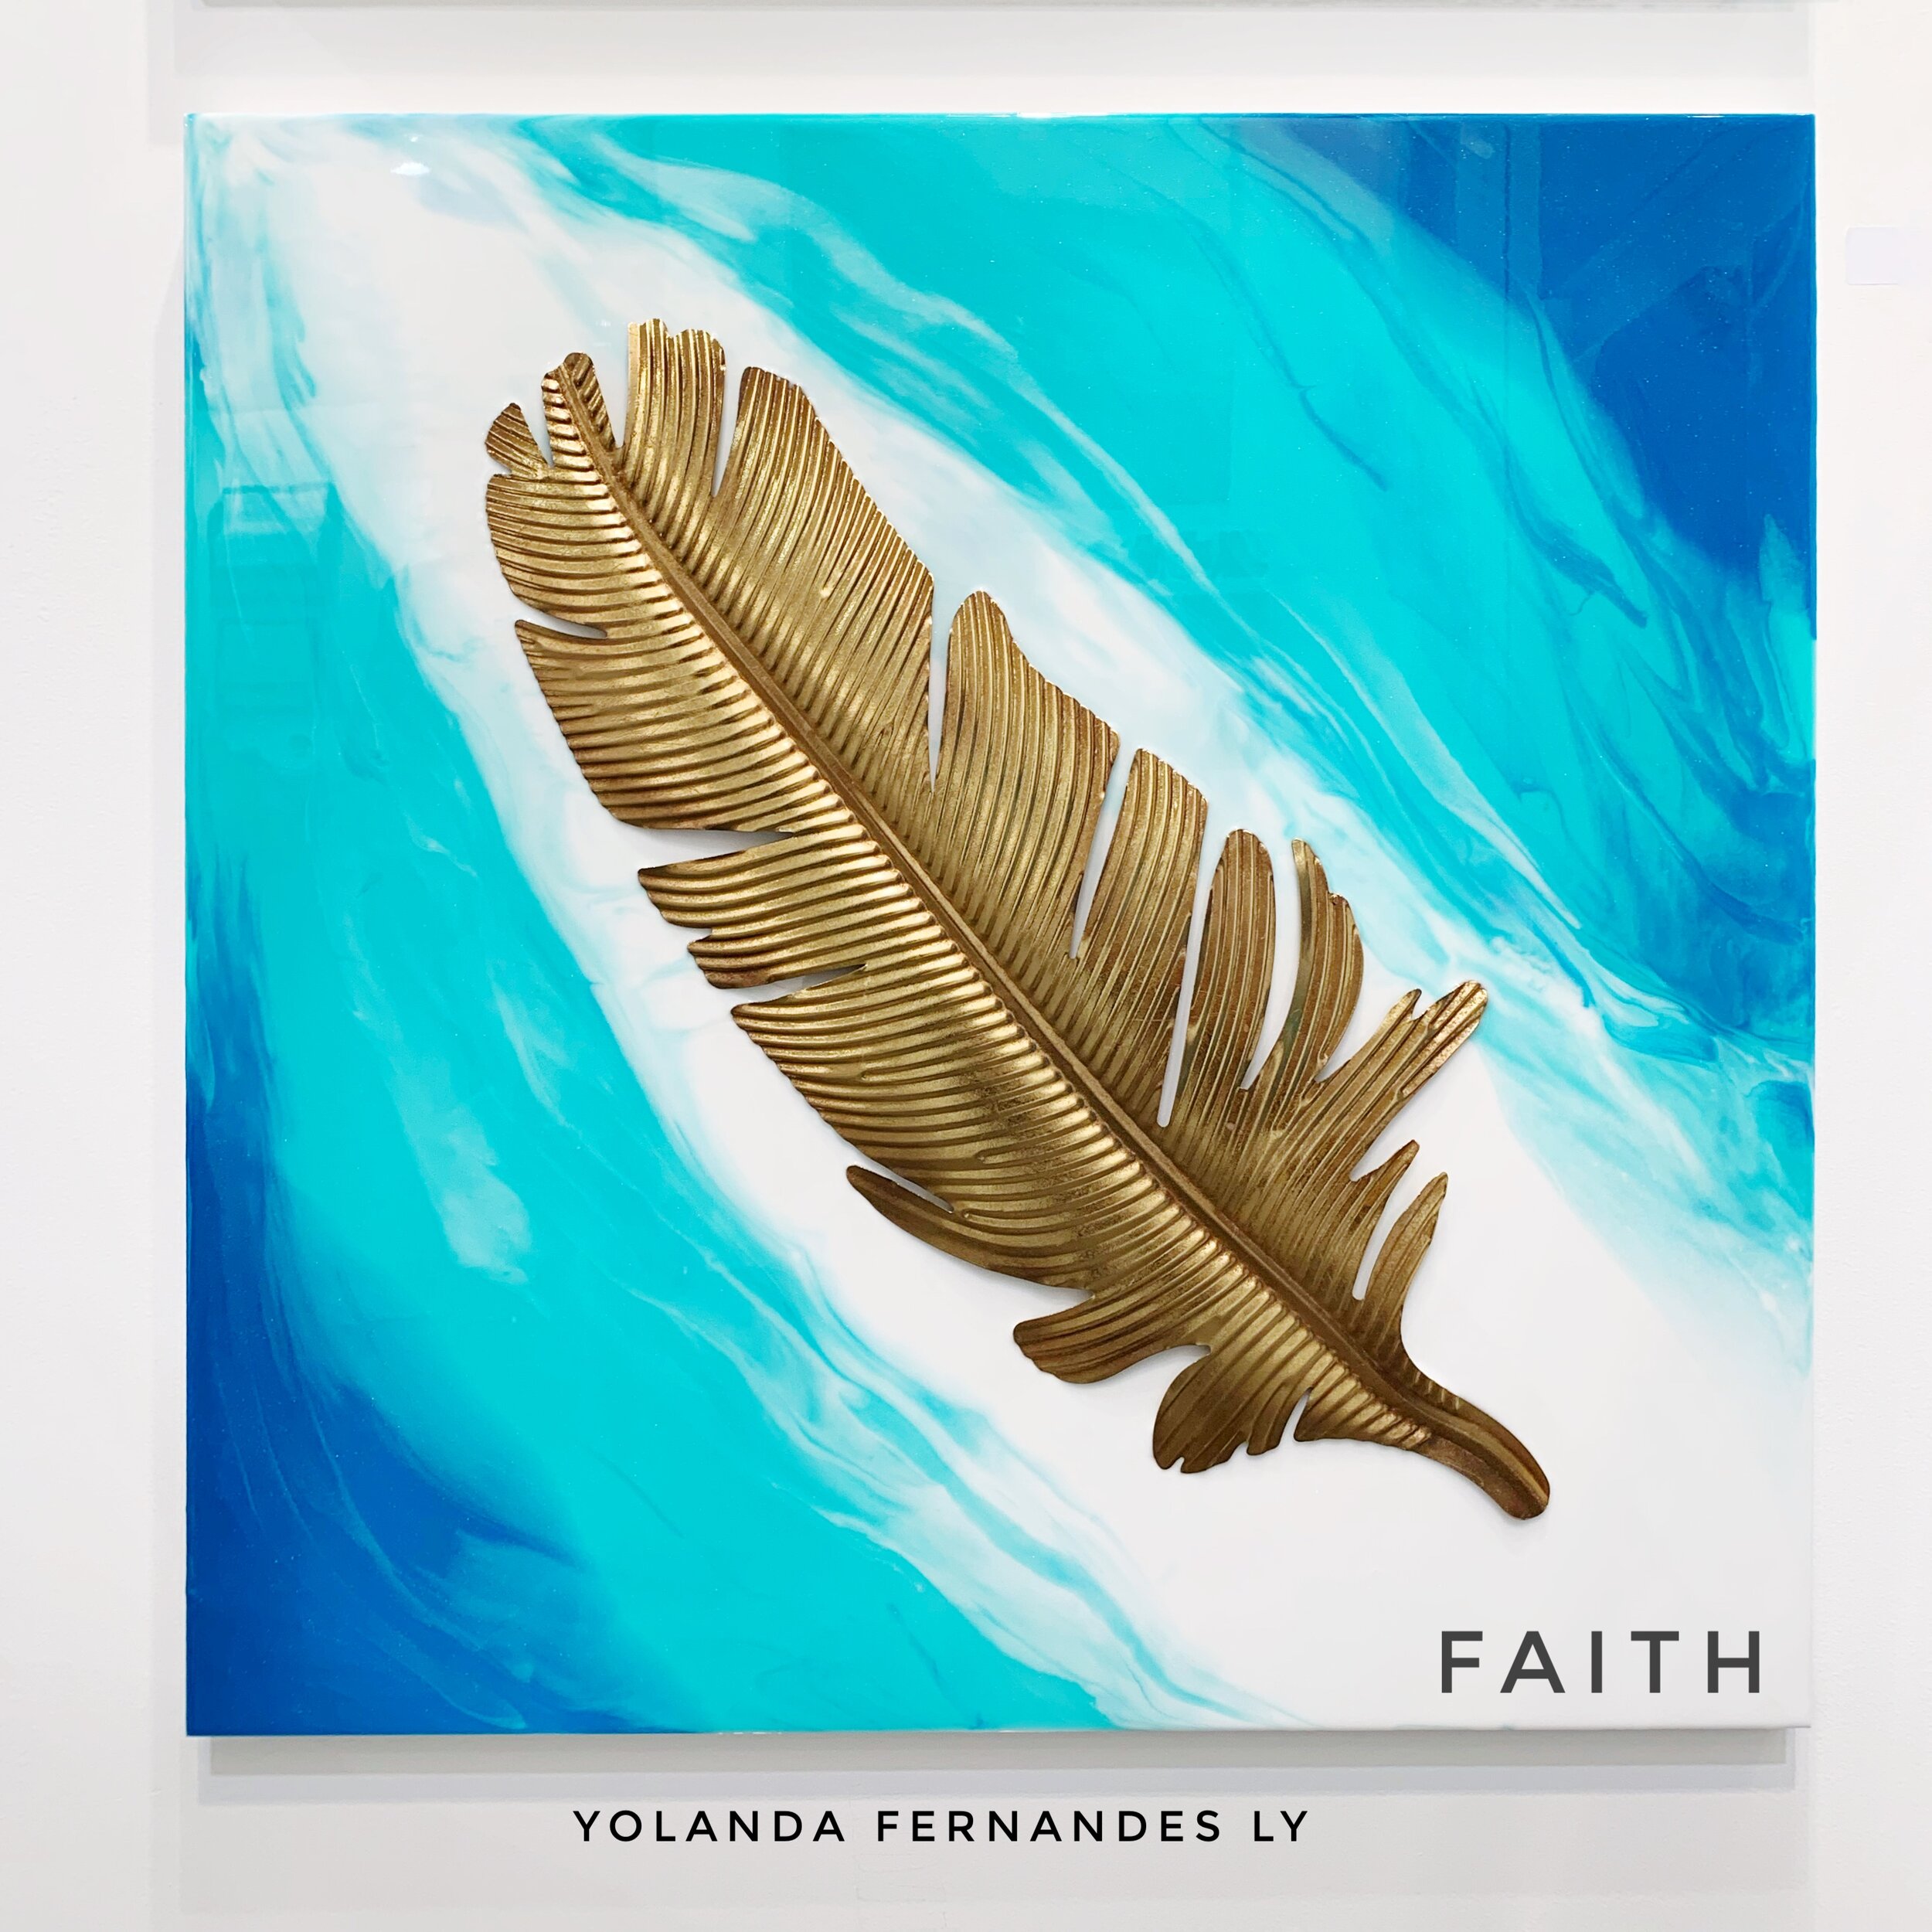 Faith - 3x3 feet- Available